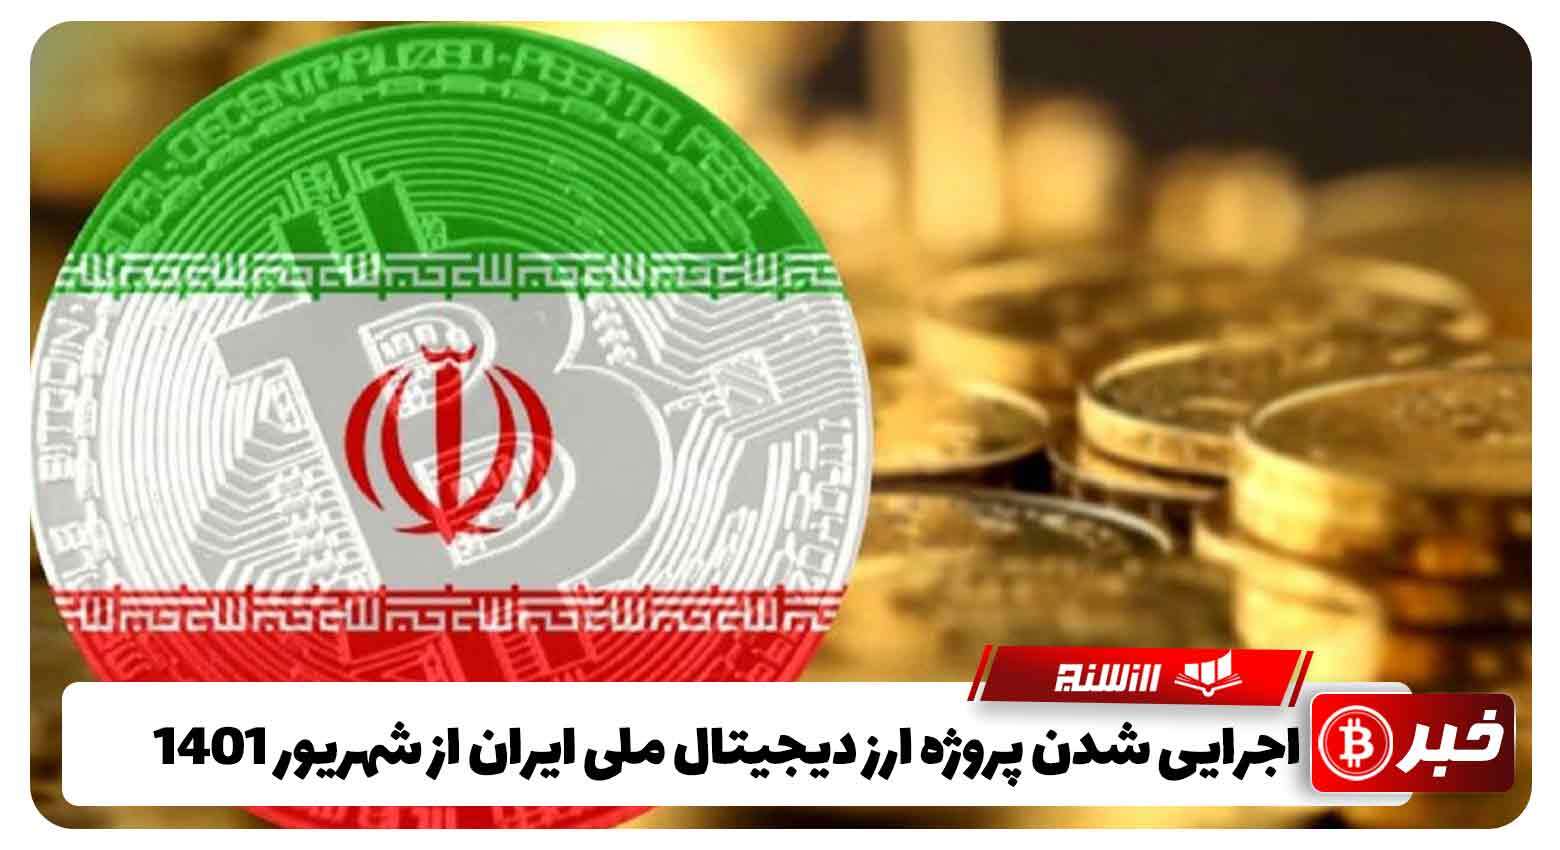 اجرایی شدن پروژه ارز دیجیتال ملی ایران از شهریور 1401